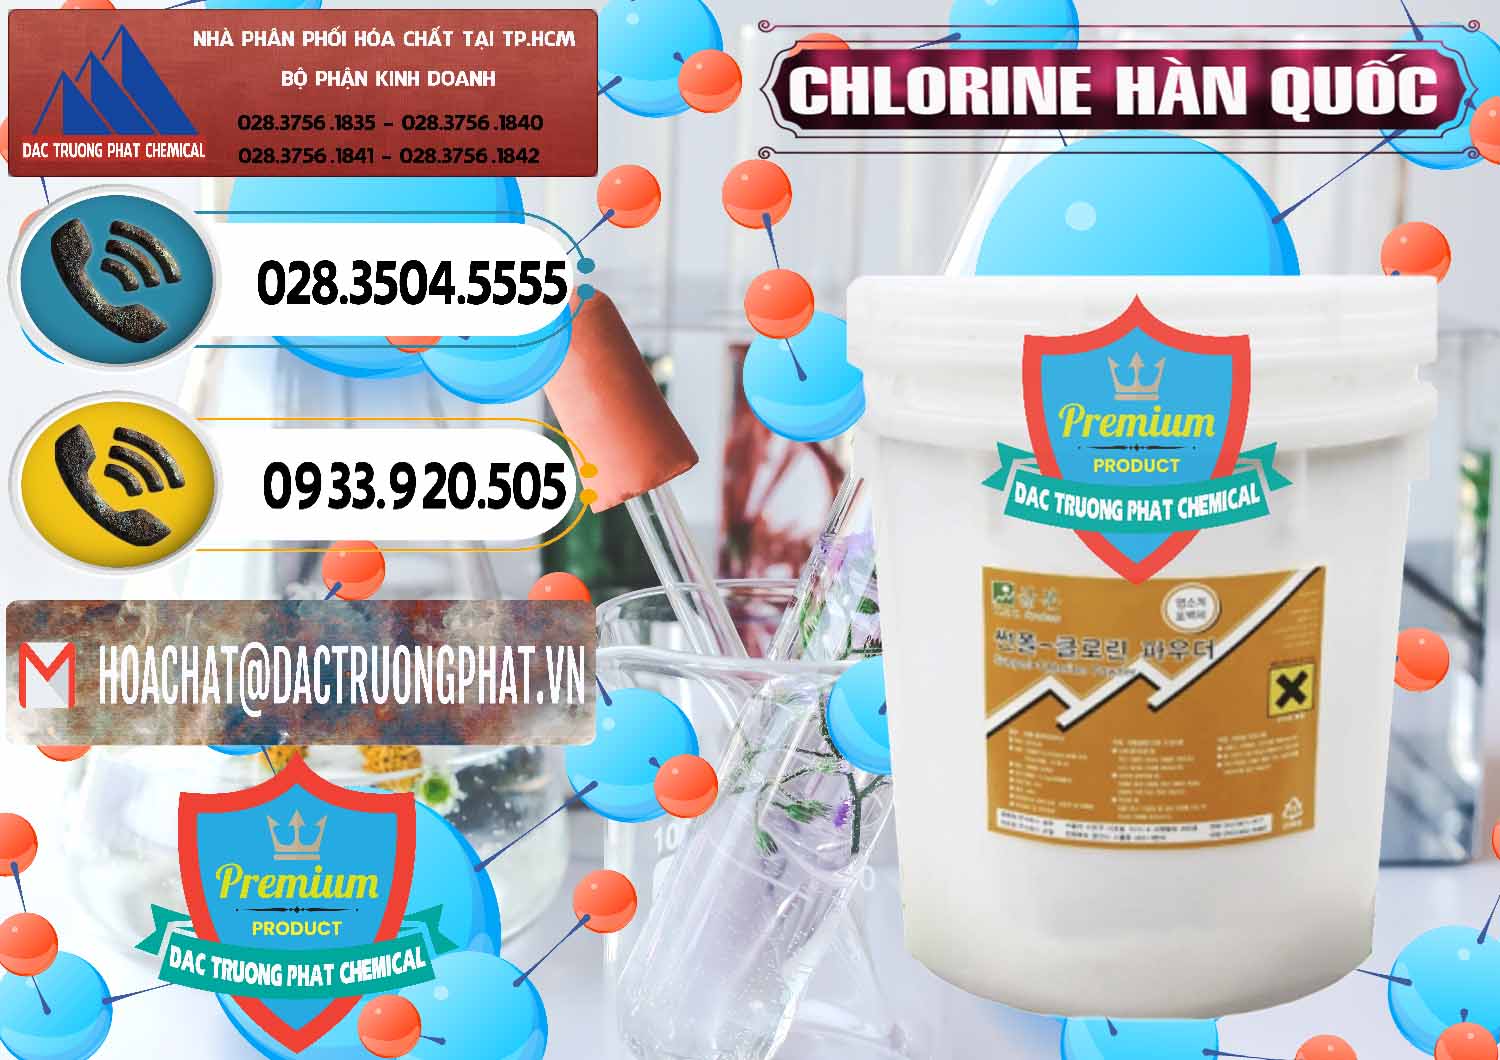 Nơi chuyên bán - cung ứng Chlorine – Clorin 70% Hàn Quốc Korea - 0345 - Công ty cung cấp ( phân phối ) hóa chất tại TP.HCM - hoachatdetnhuom.vn